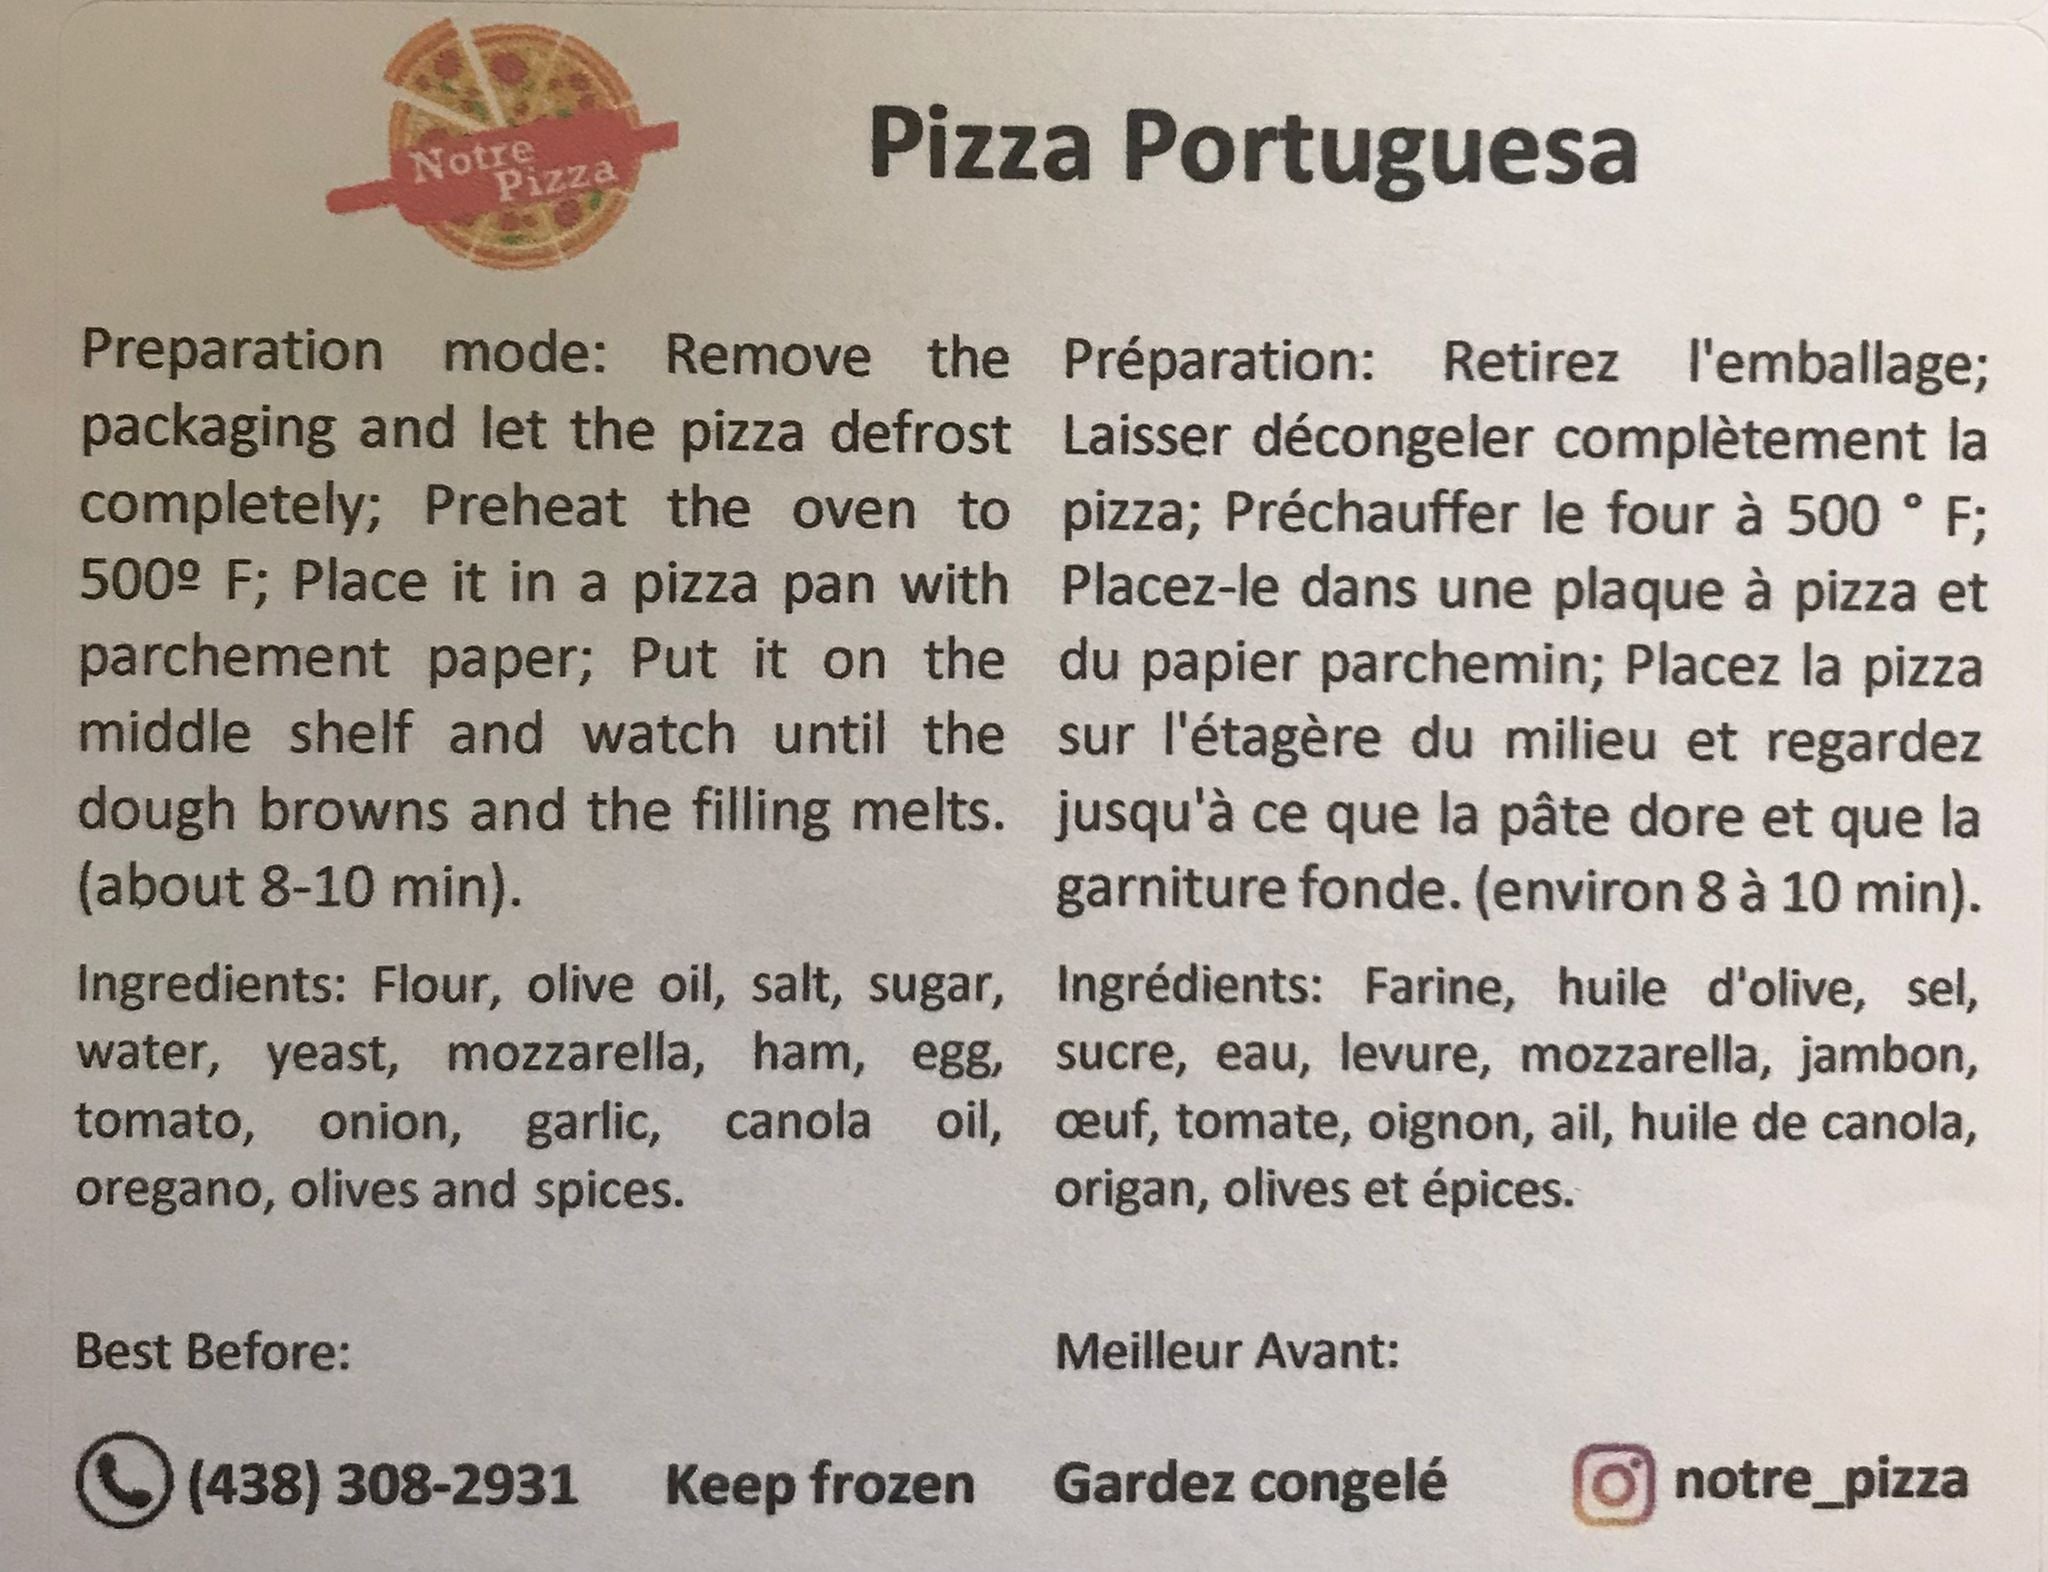 NOTRE PIZZA  - Pizza da Casa - Portuguesa 